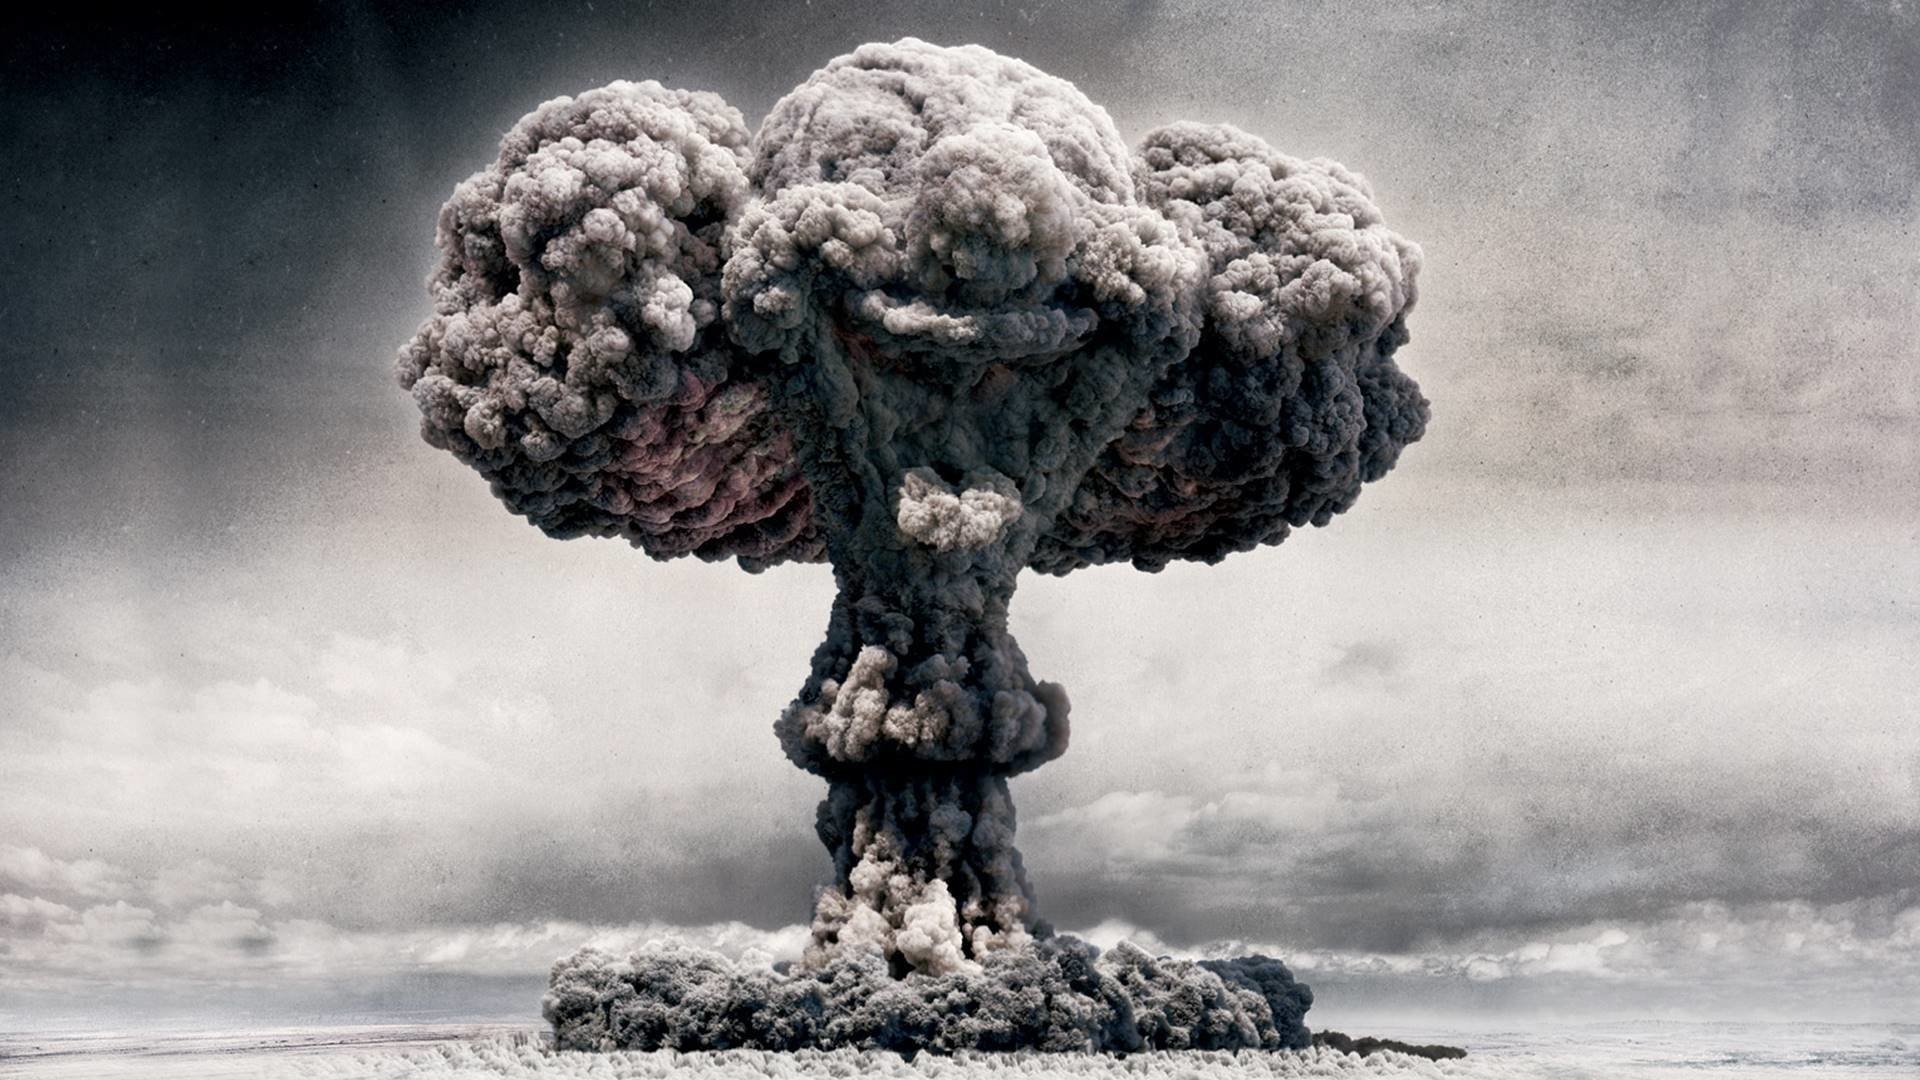 atombomben tapete,explosion,himmel,wolke,felsen,baum